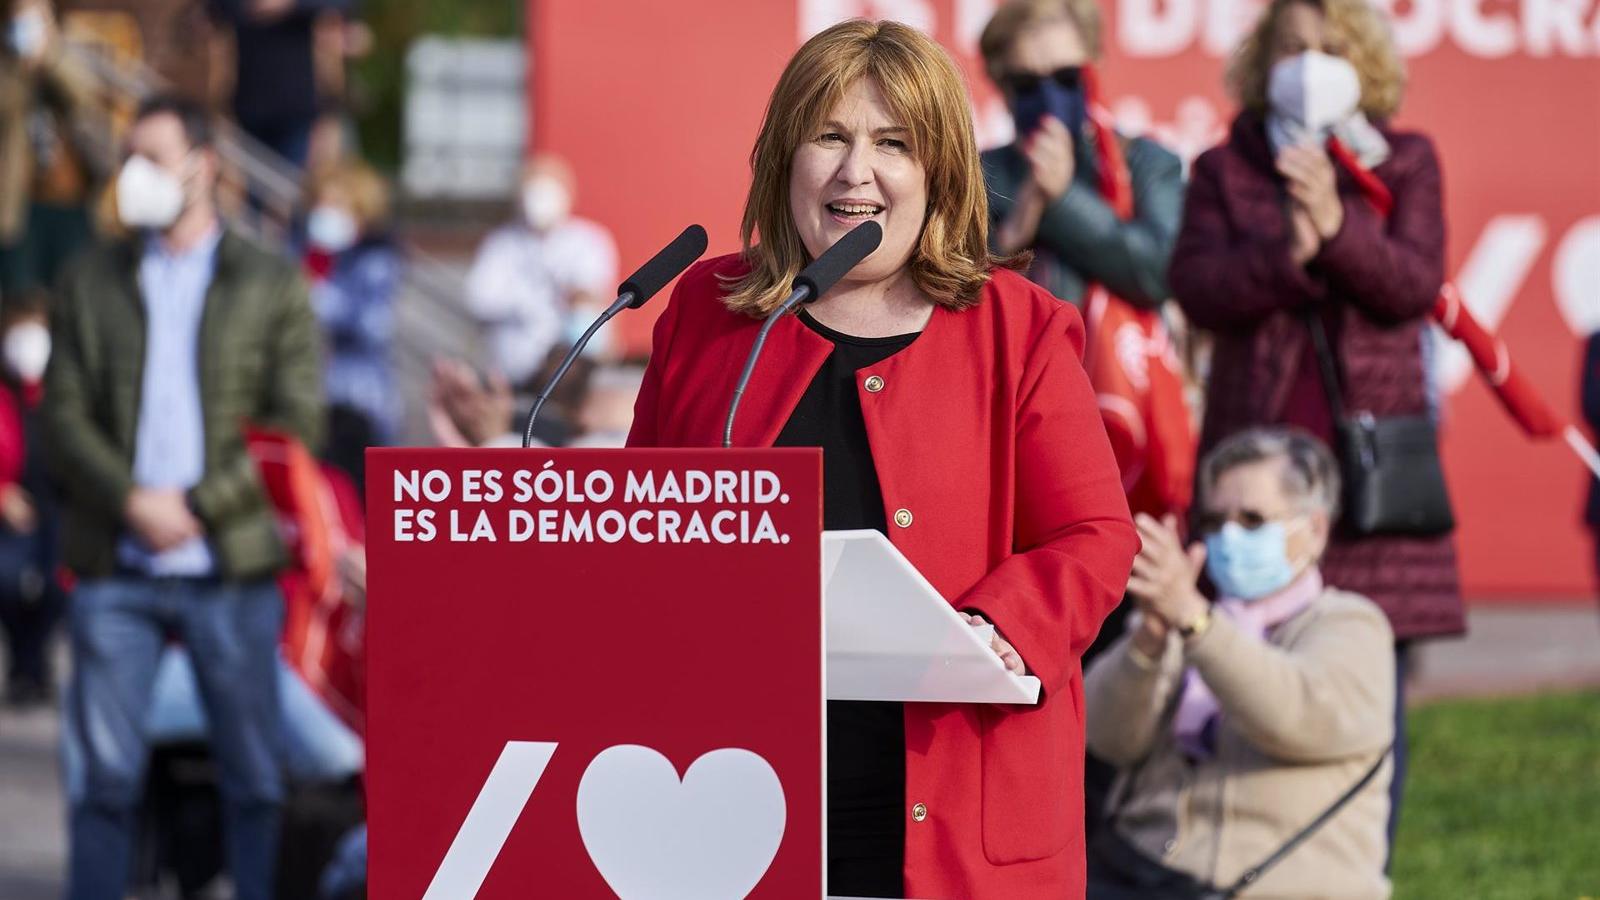 El Pleno de Alcorcón rechaza la dimisión de la alcaldesa que pedía PP, Cs y Vox